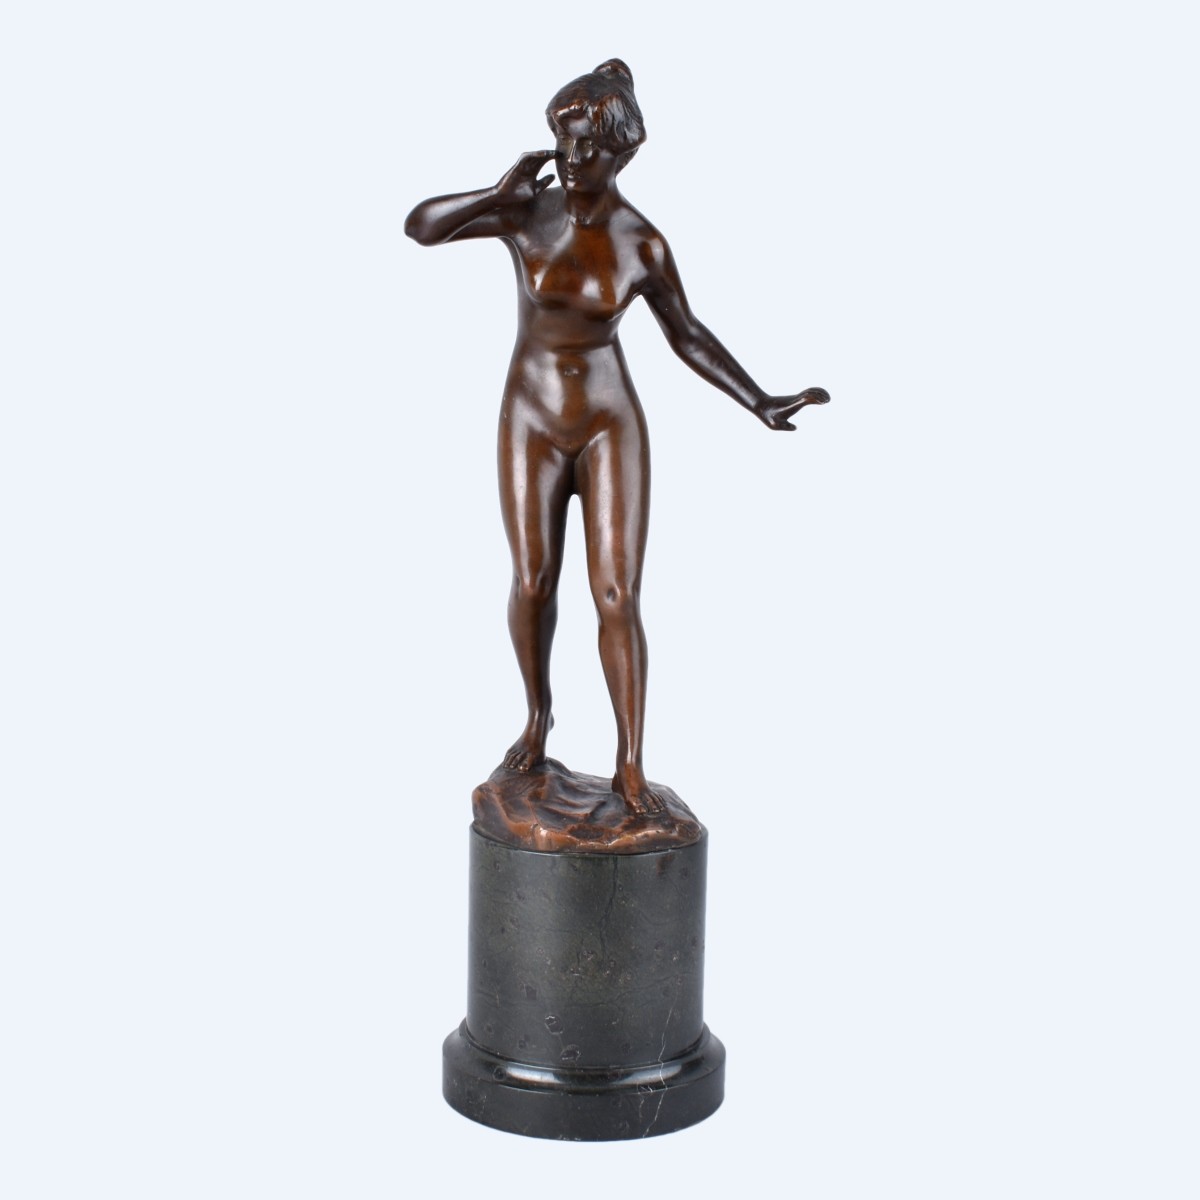 Hans Keck Austrian (1875-1941) Bronze